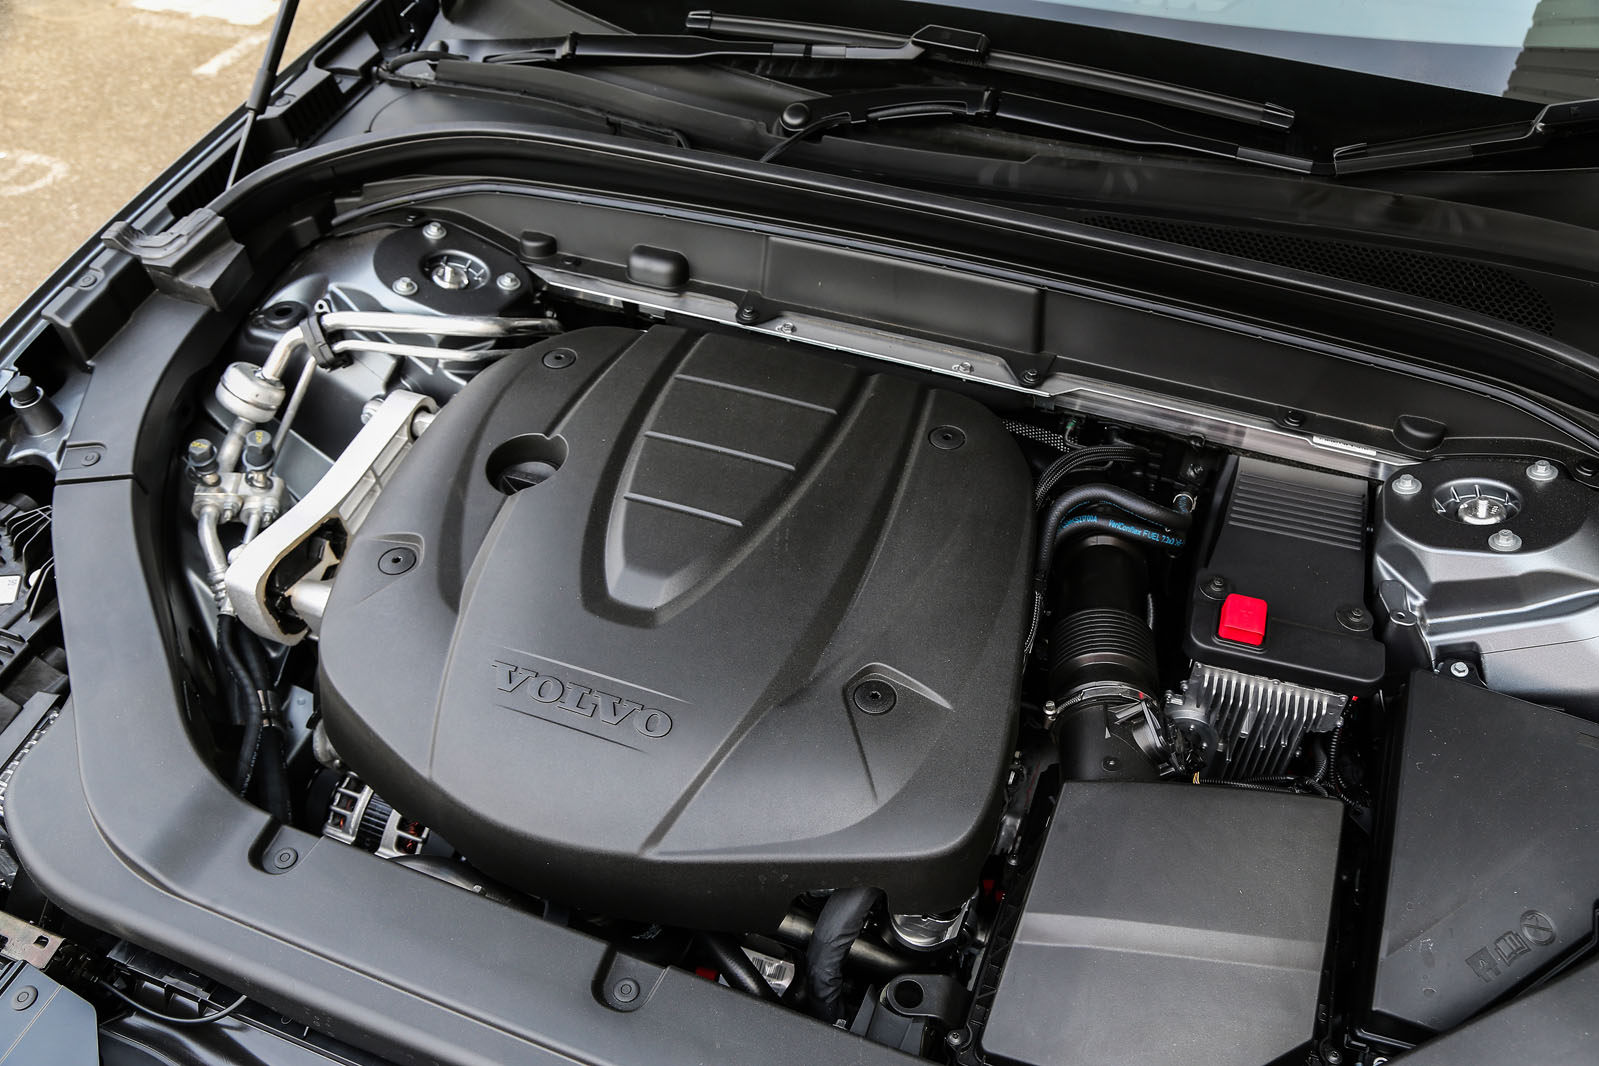 2.0-litre Volvo XC60 D4 diesel engine